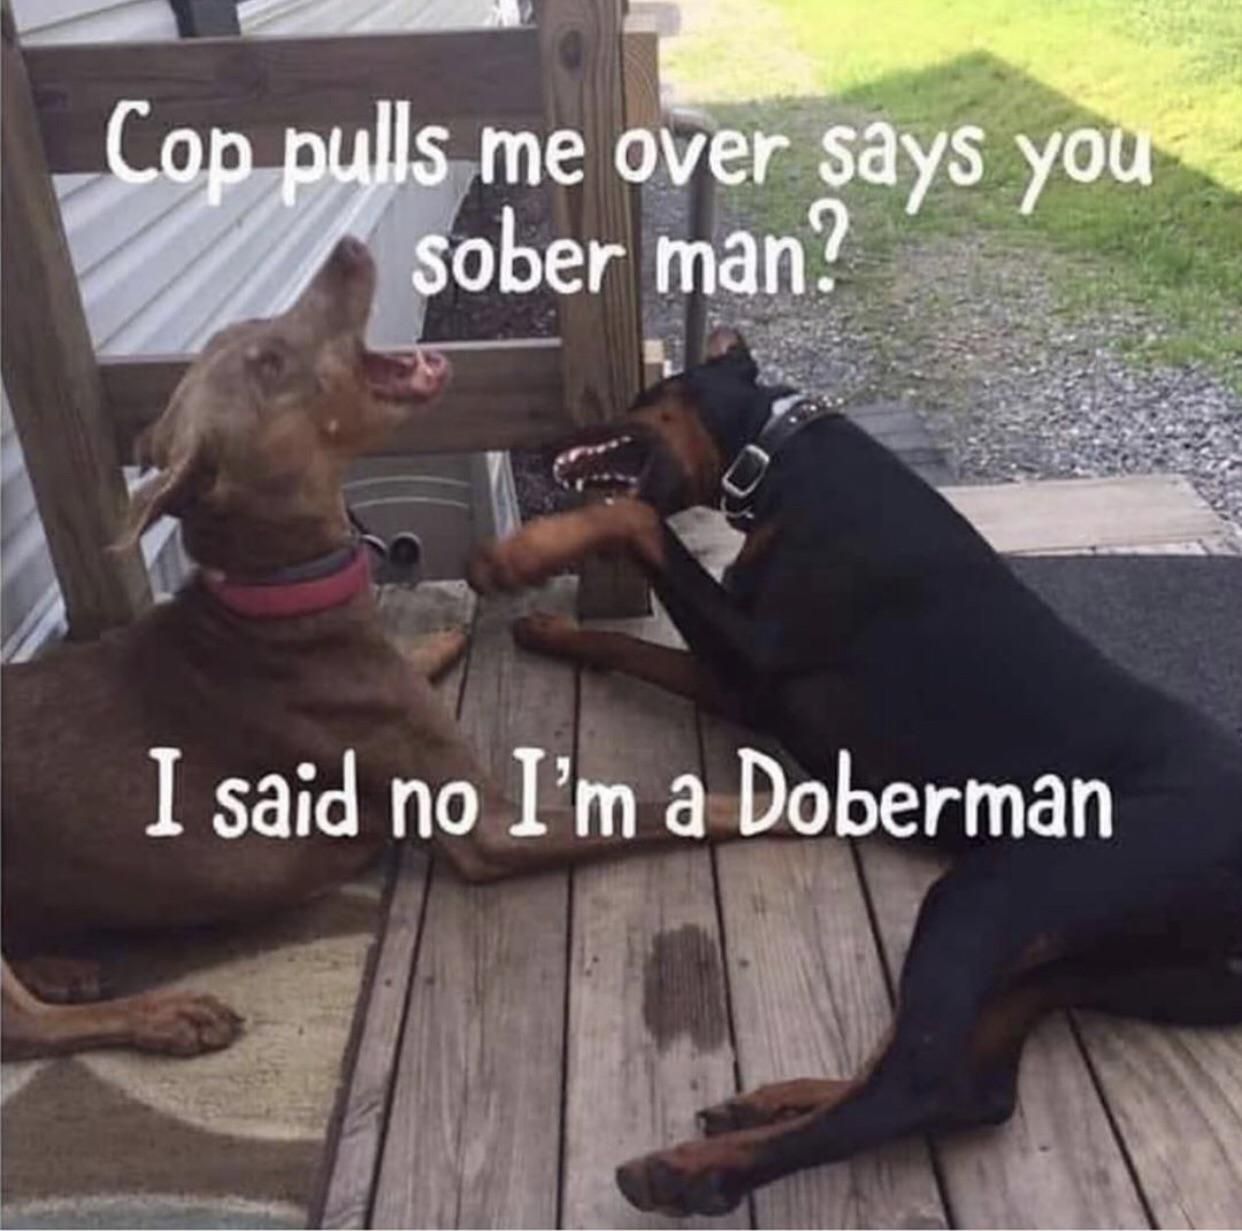 Those damn cop!